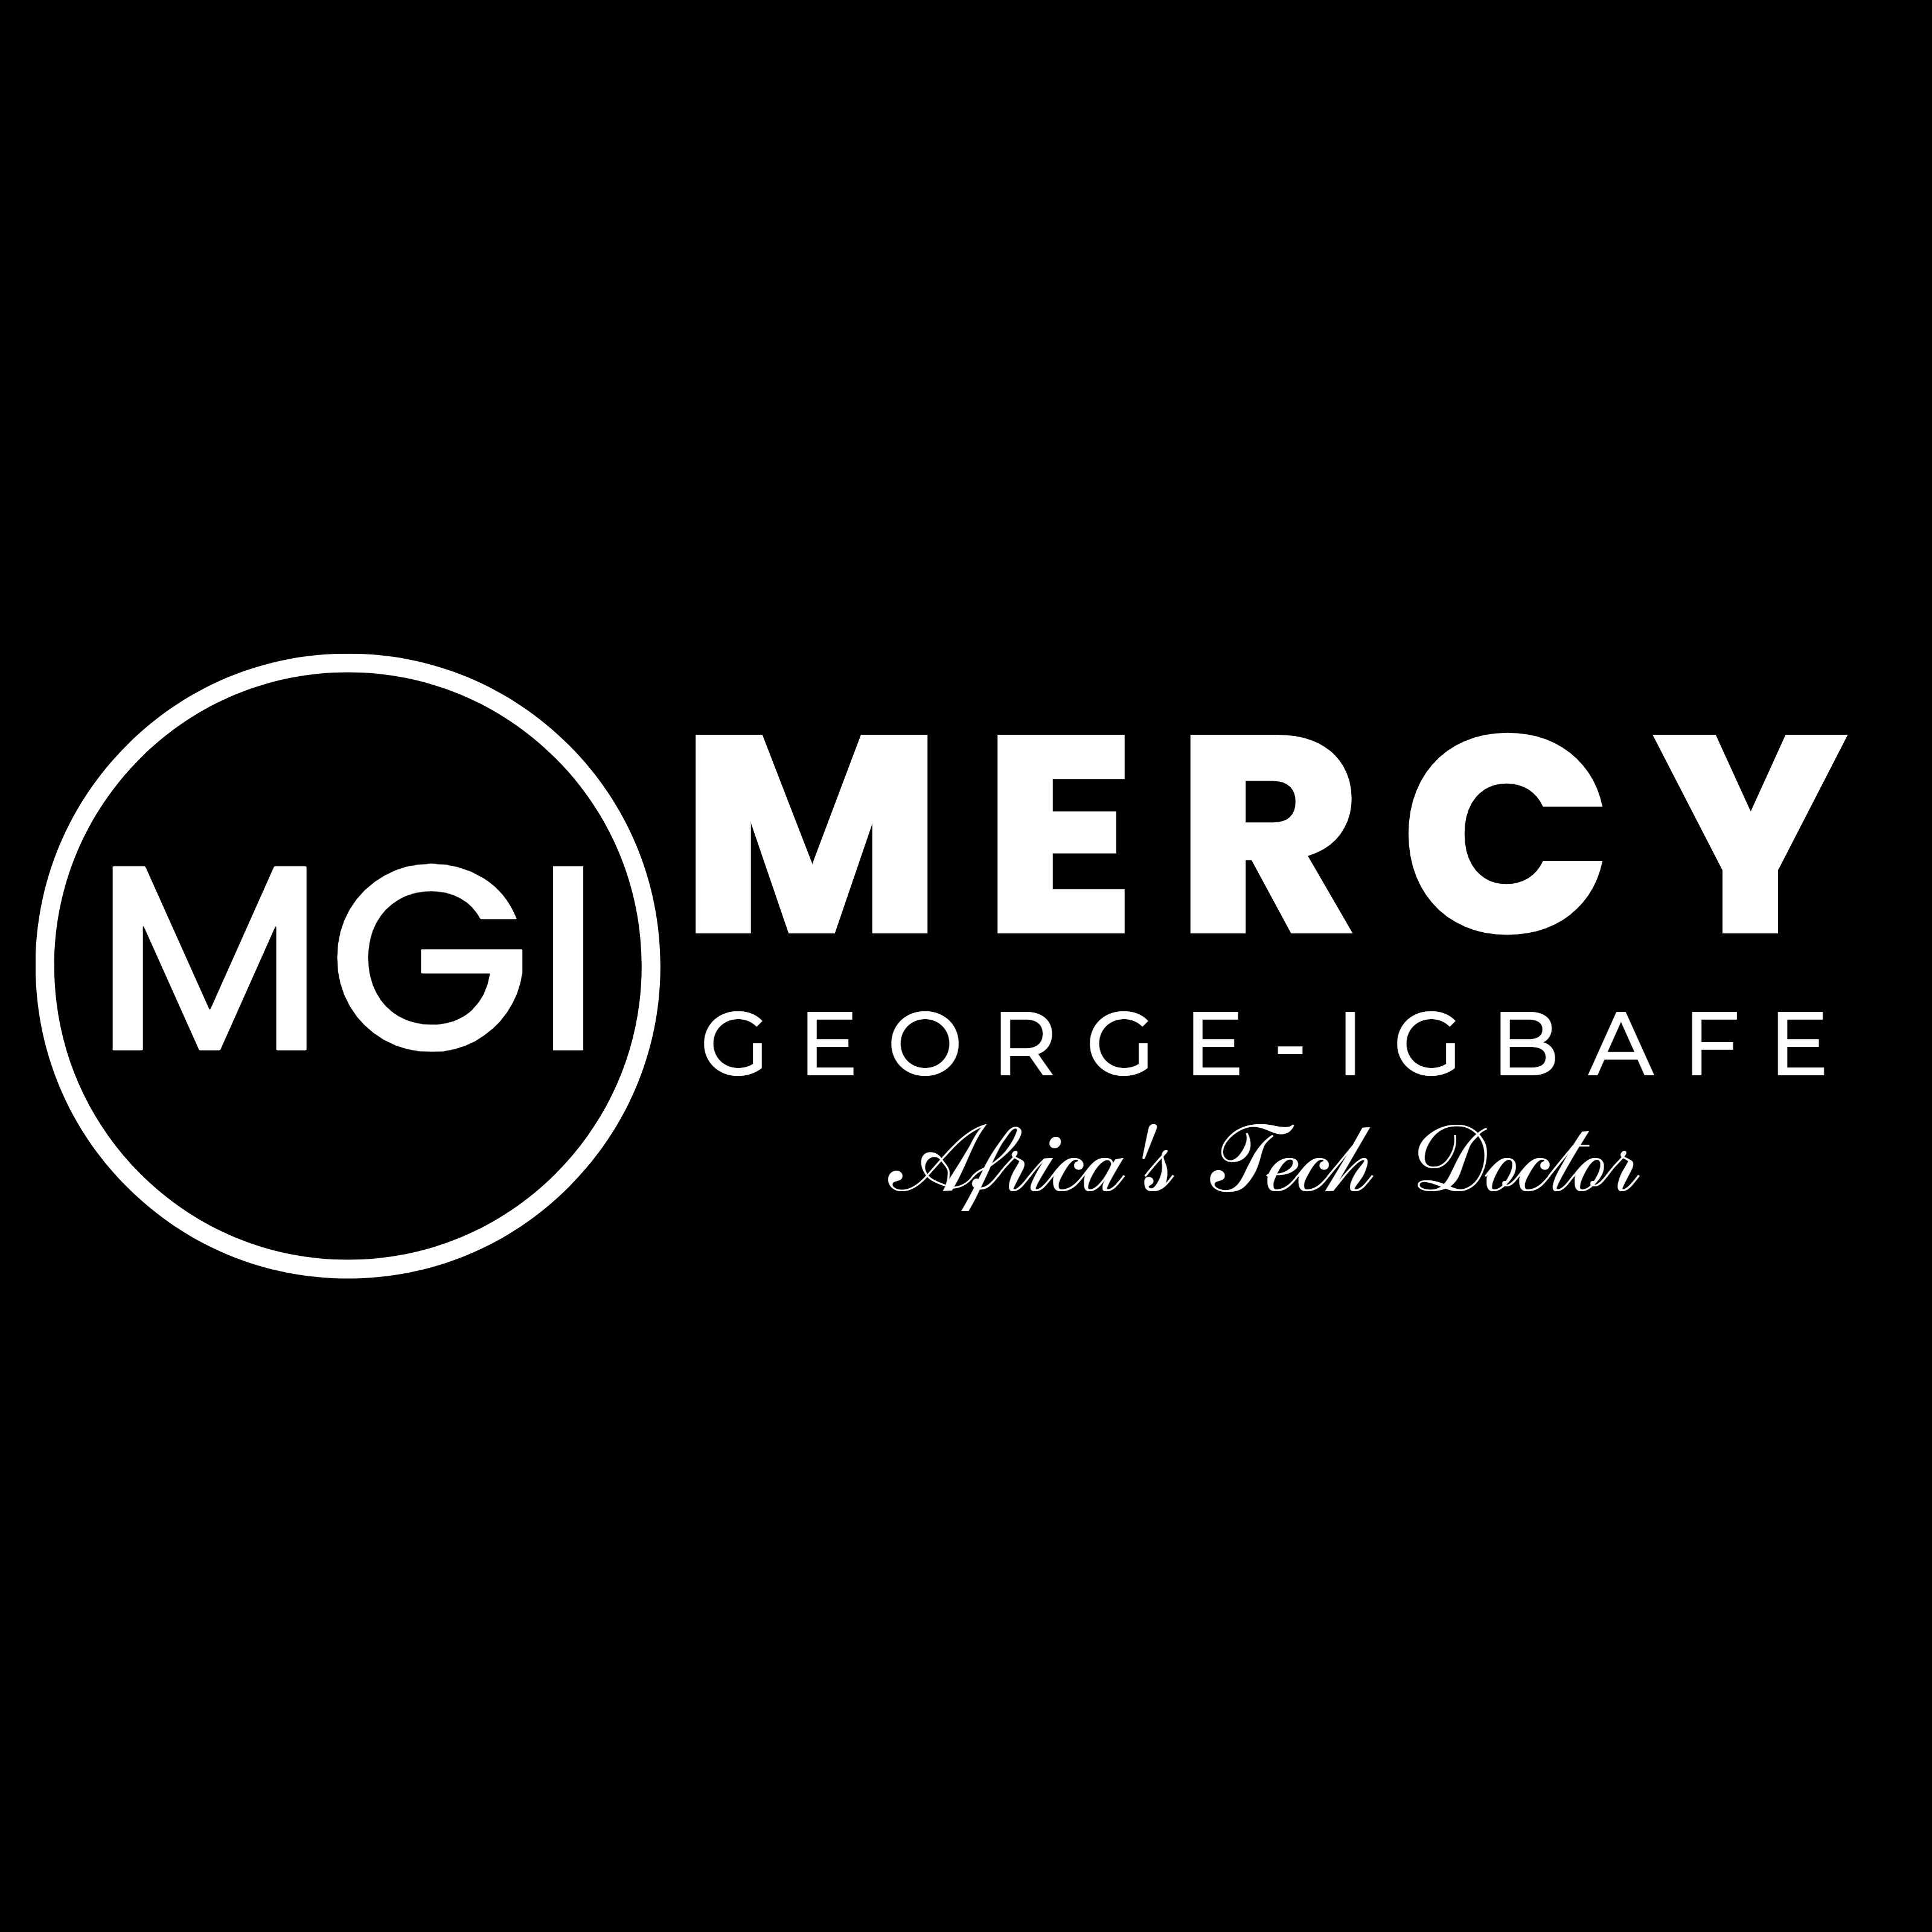 Mercy George Igbafe